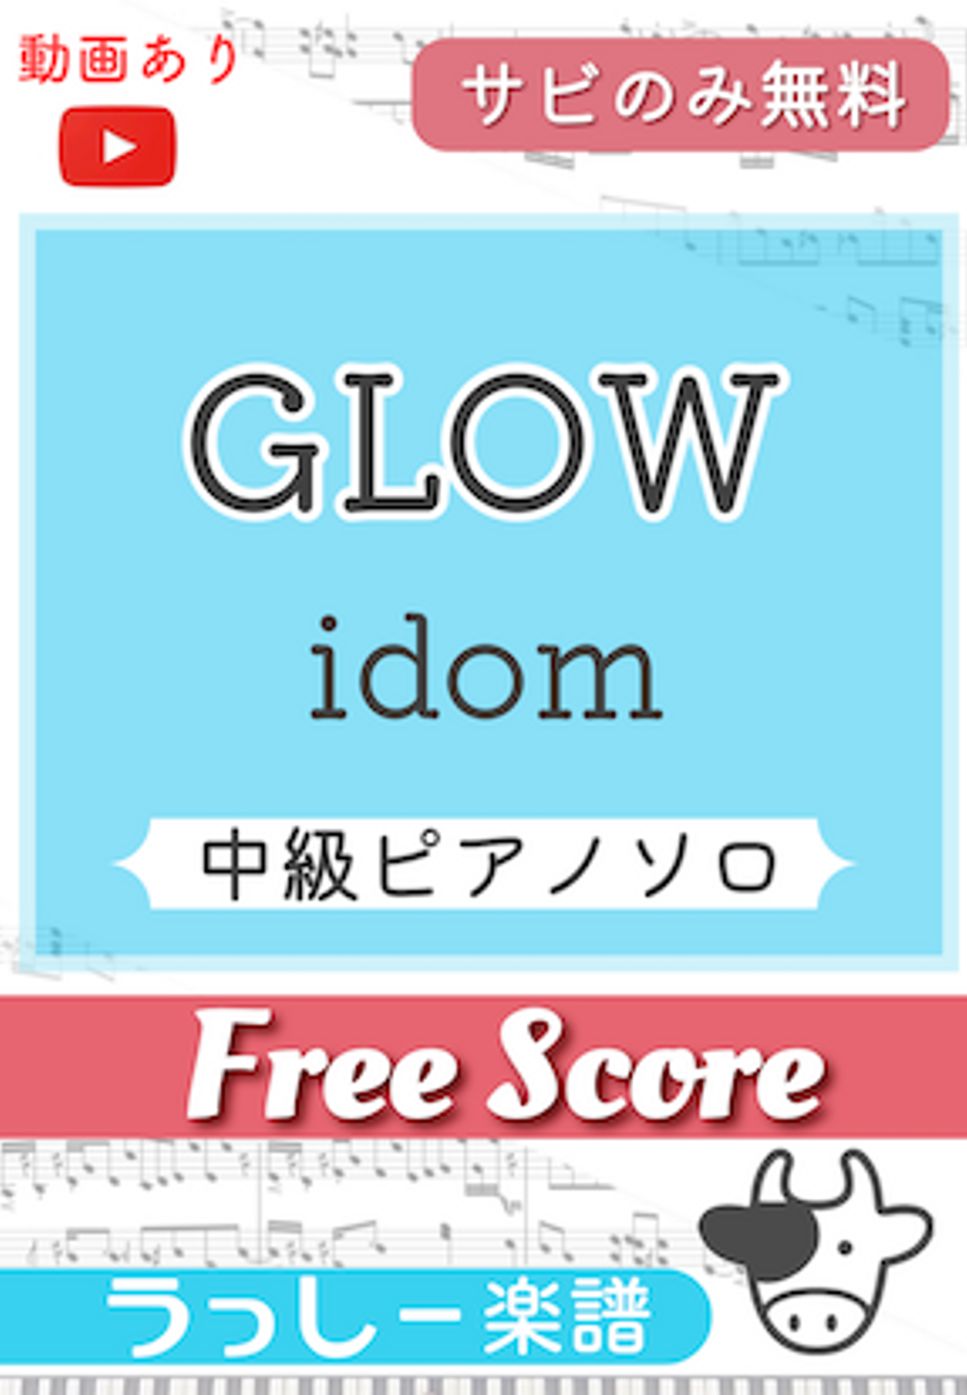 idom - GLOW (サビのみ無料) by 牛武奏人